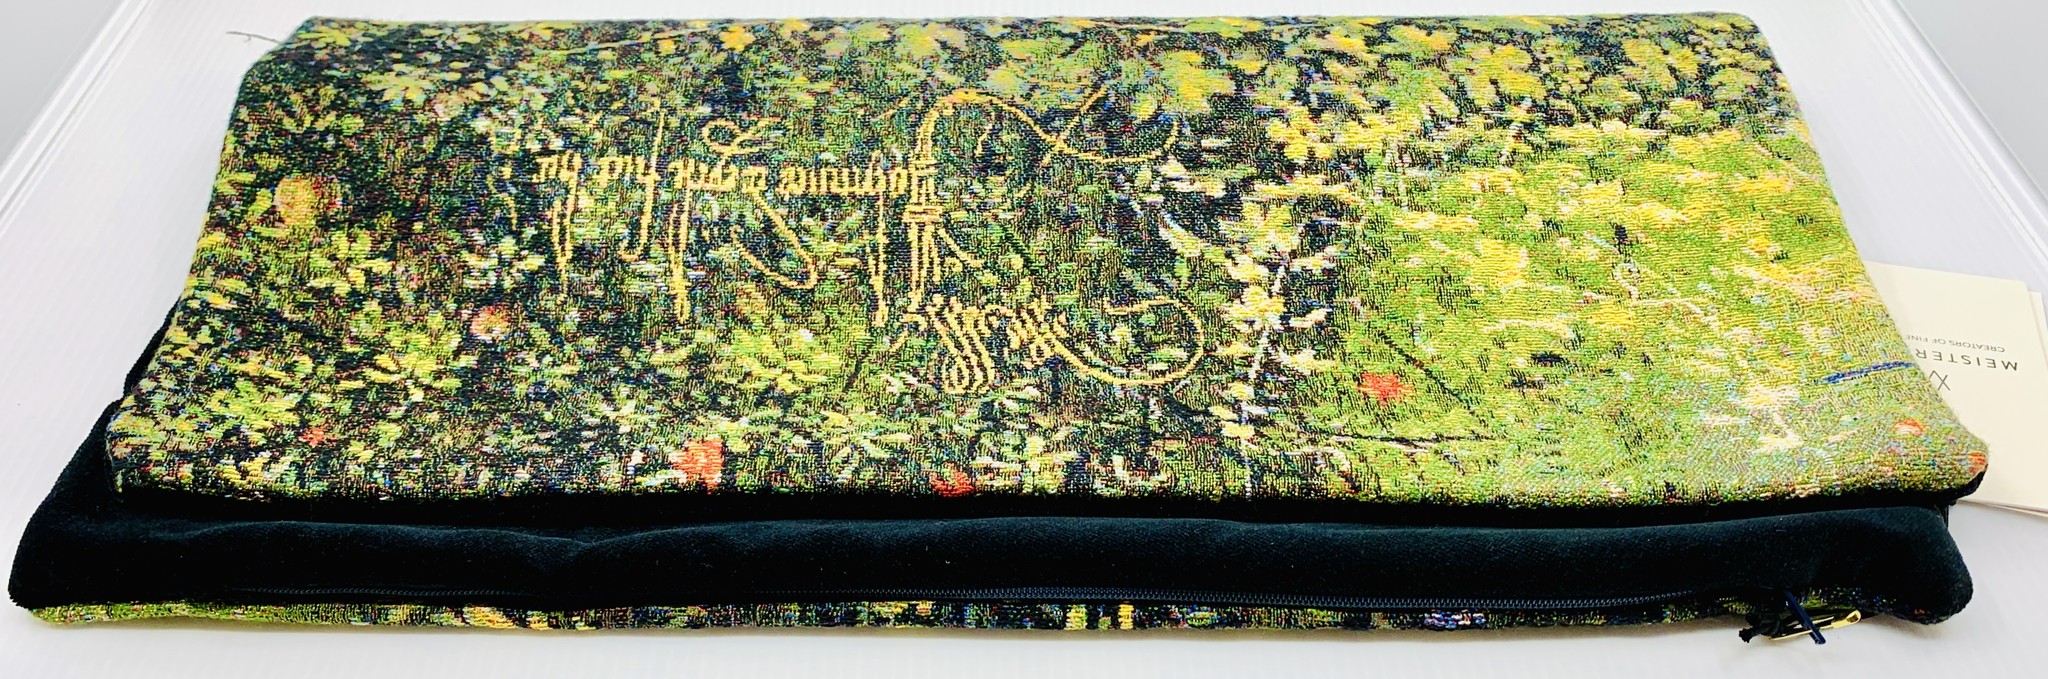 Meisterwerke Cushion cover Flowers with Jan Van Eyck’s signature - Meisterwerke